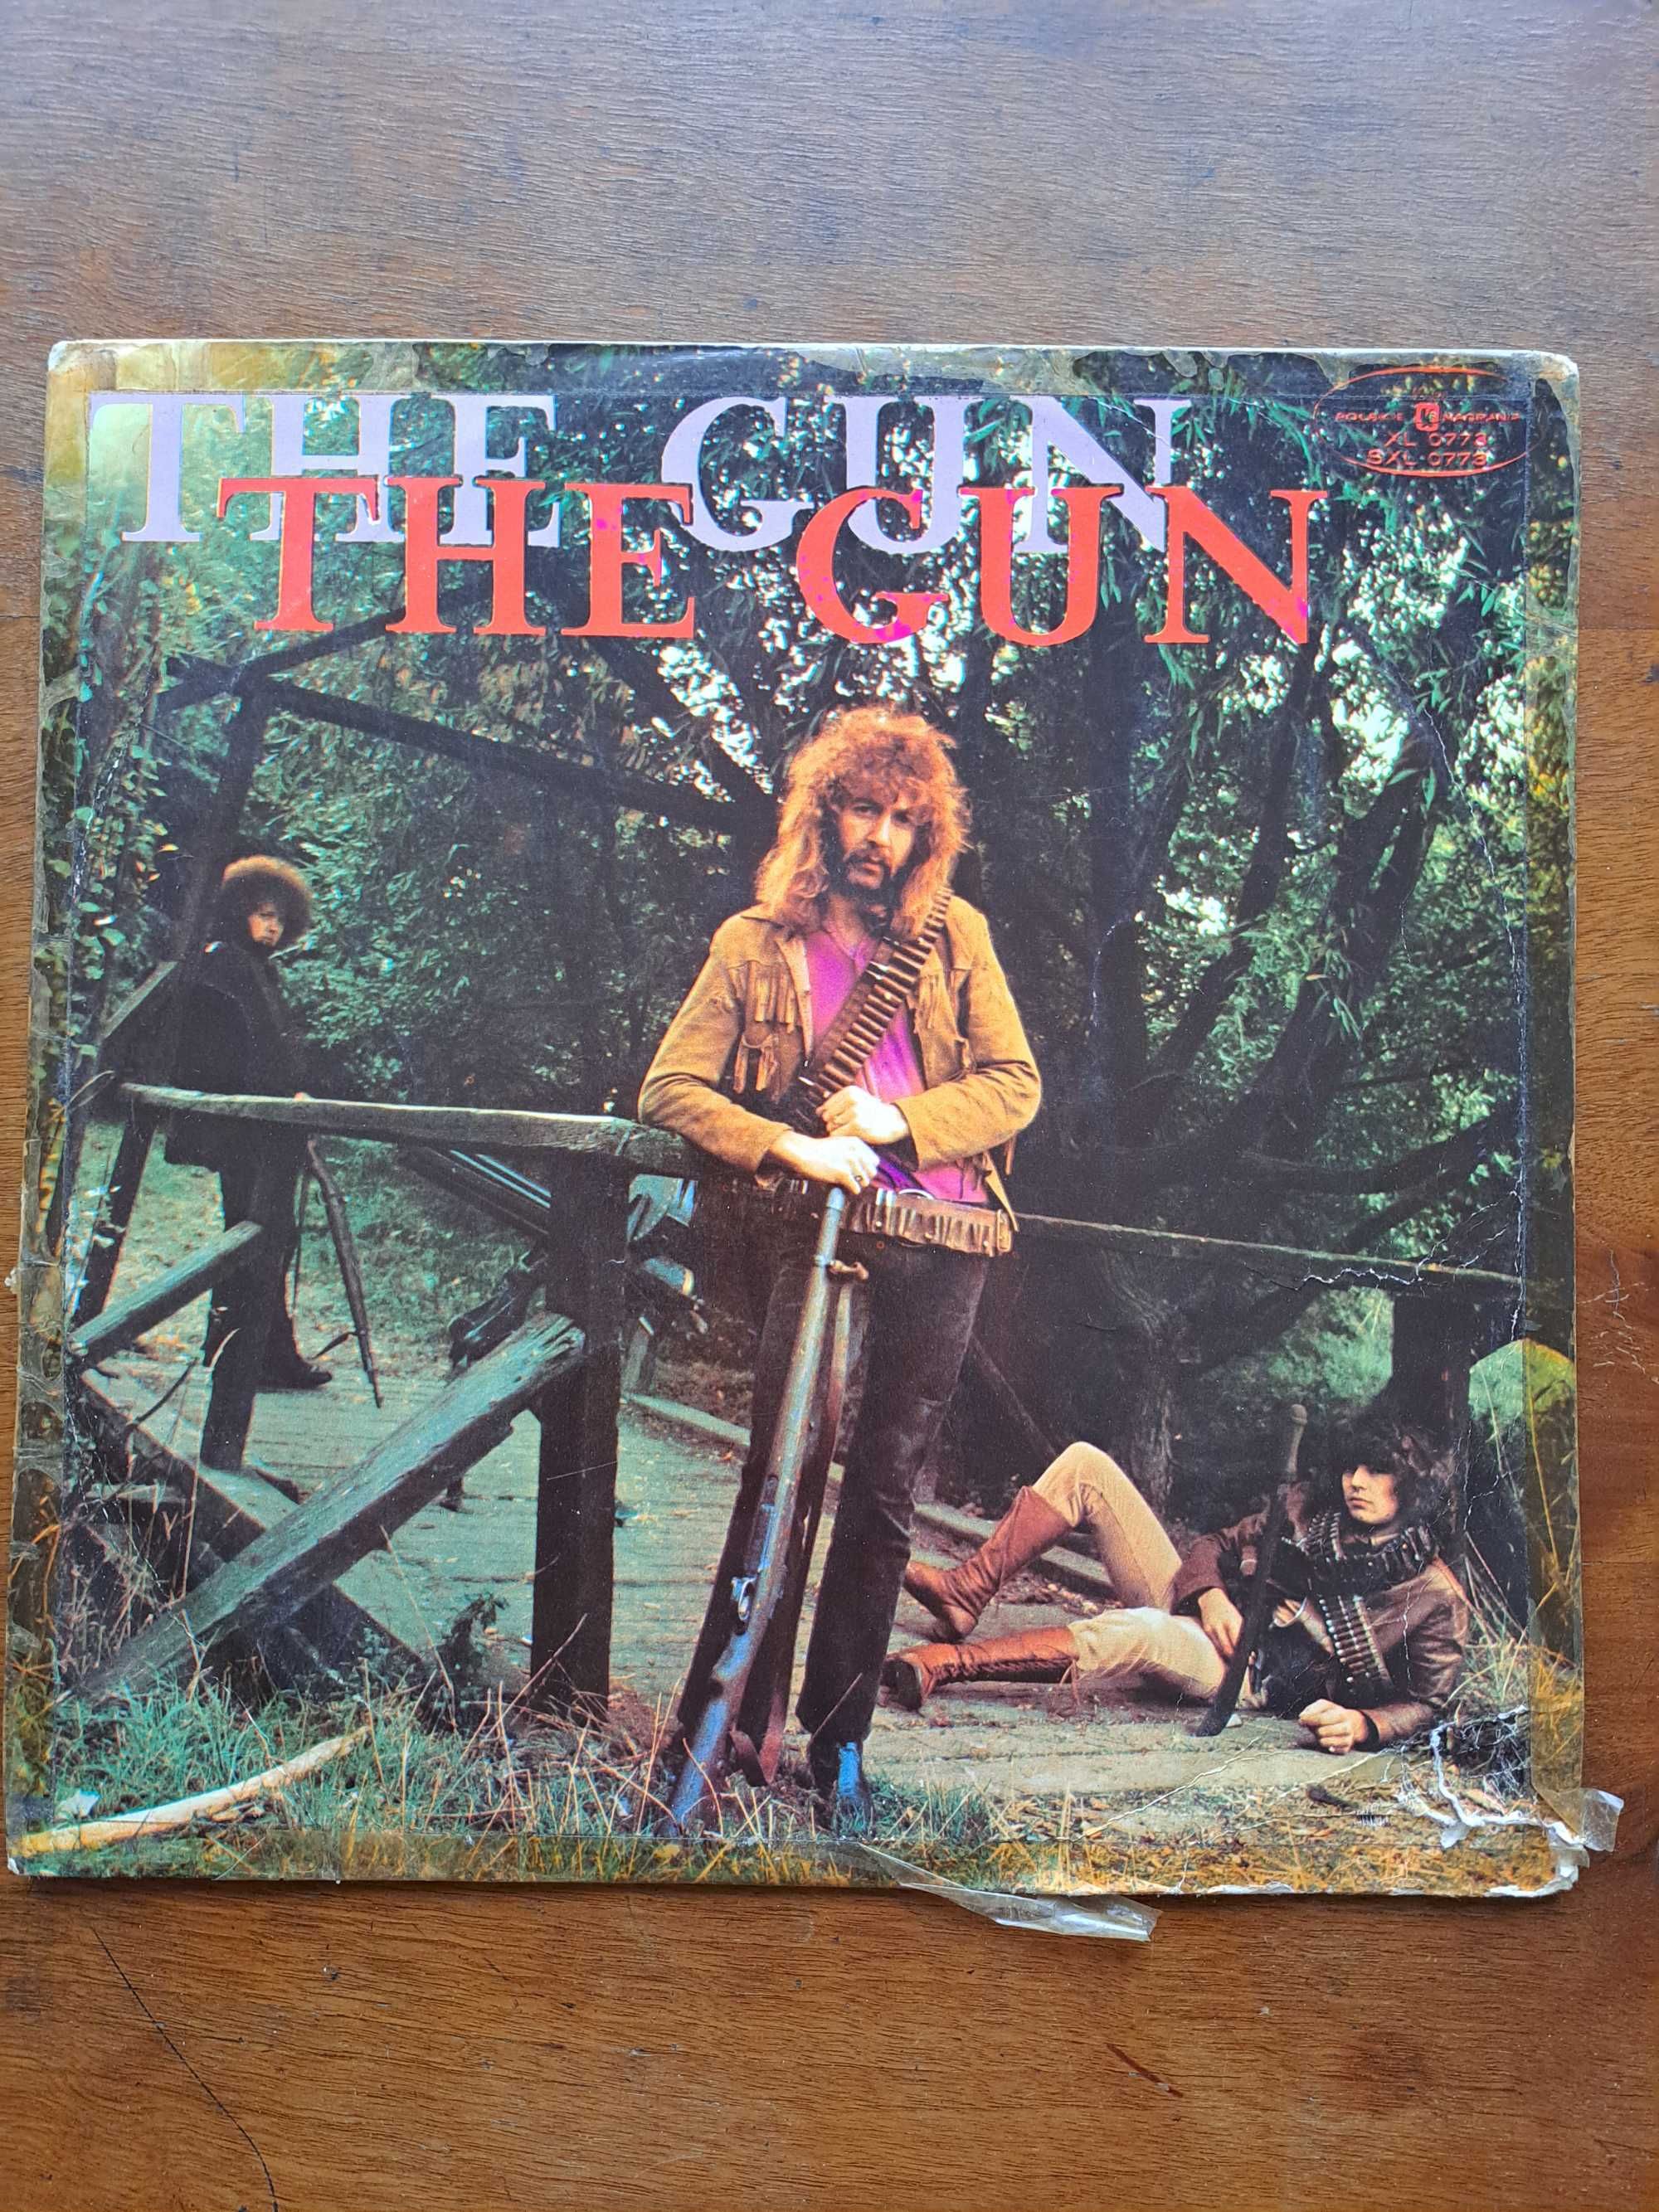 płyta winylowa brytyjskiego zespołu The Gun 1968 PRL